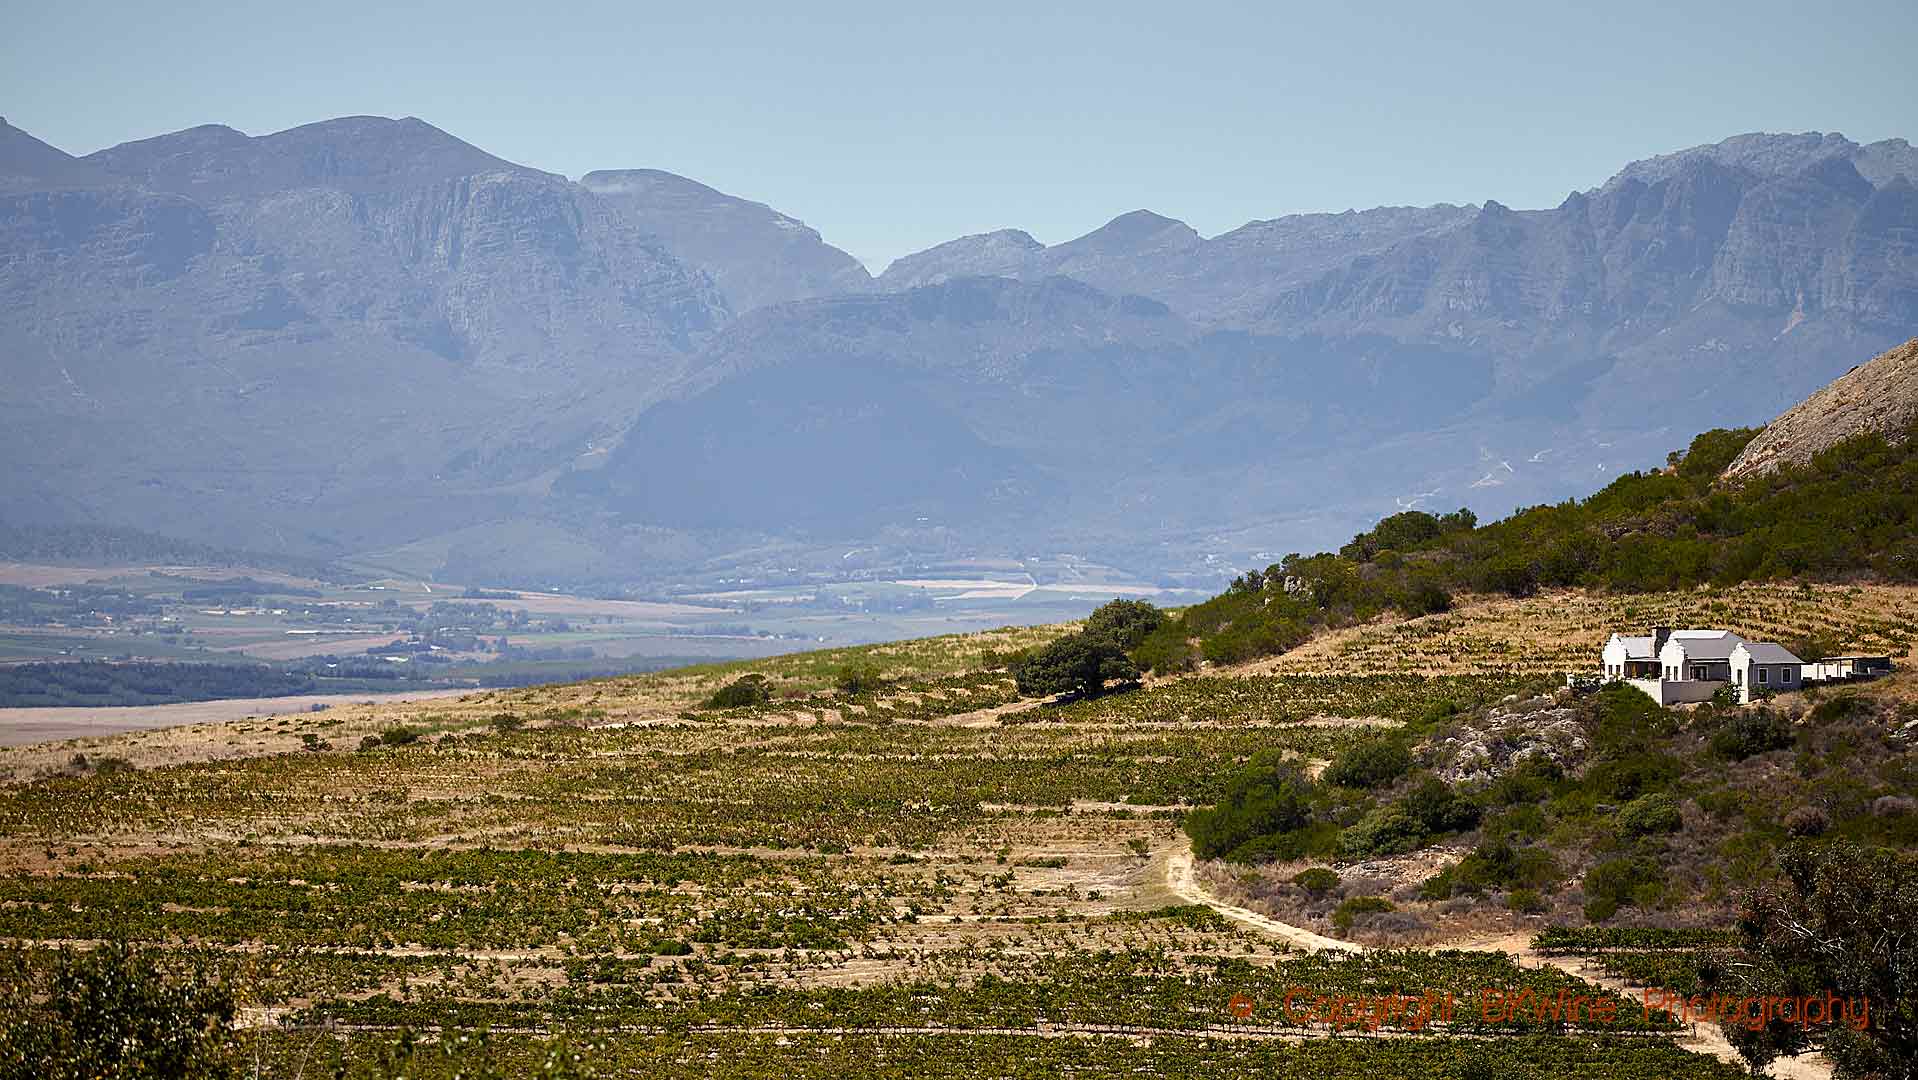 En vingård och vinrankor på en sluttning i Sydafrika